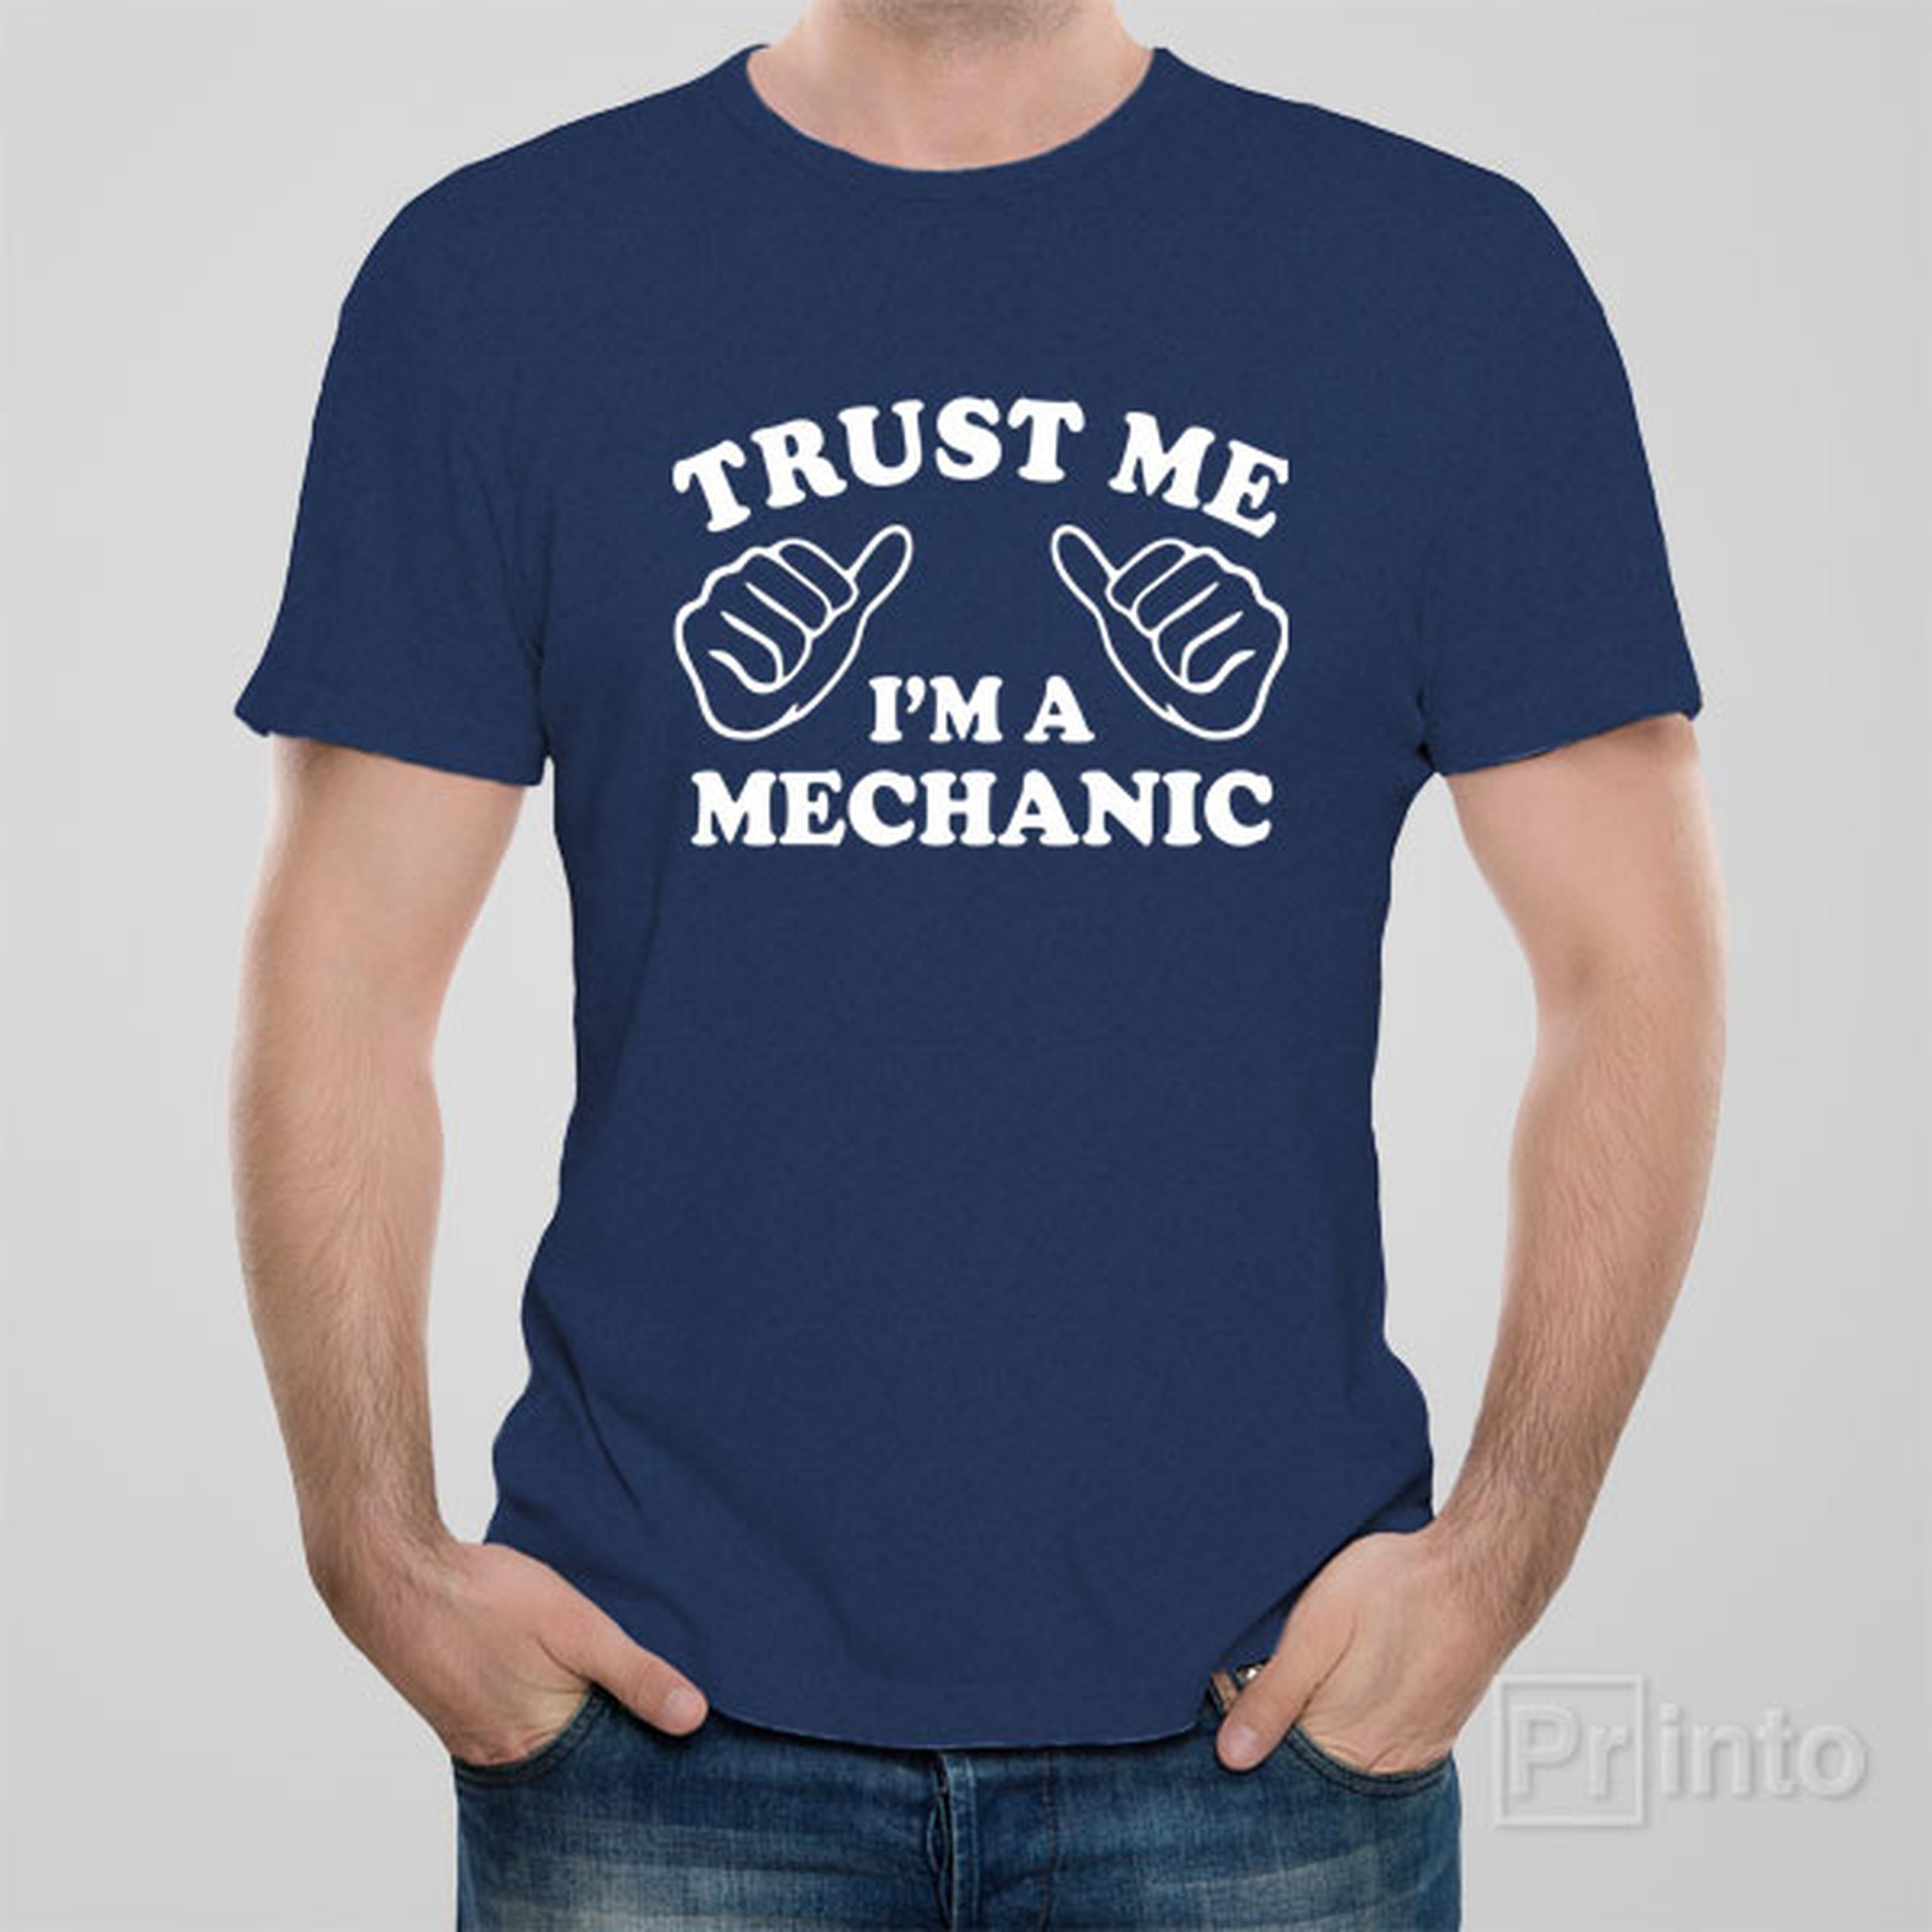 trust-me-i-am-a-mechanic-t-shirt